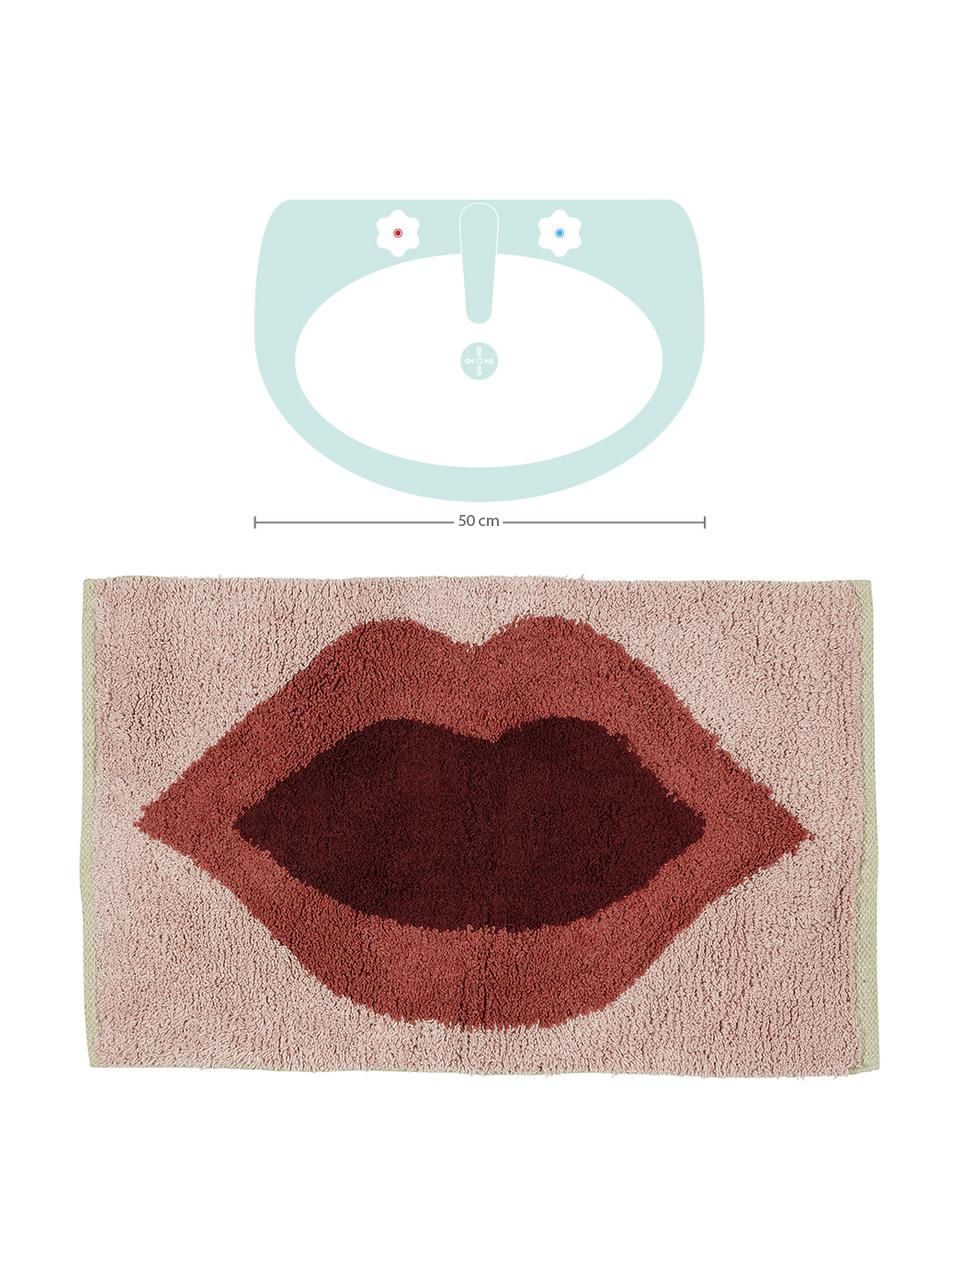 Predložka do kúpeľne s motívom Kiss, 100 %  bavlna
Bez protišmykovej úpravy, Bledoružová, červená, tmavočervená, Š 60 x D 90 cm